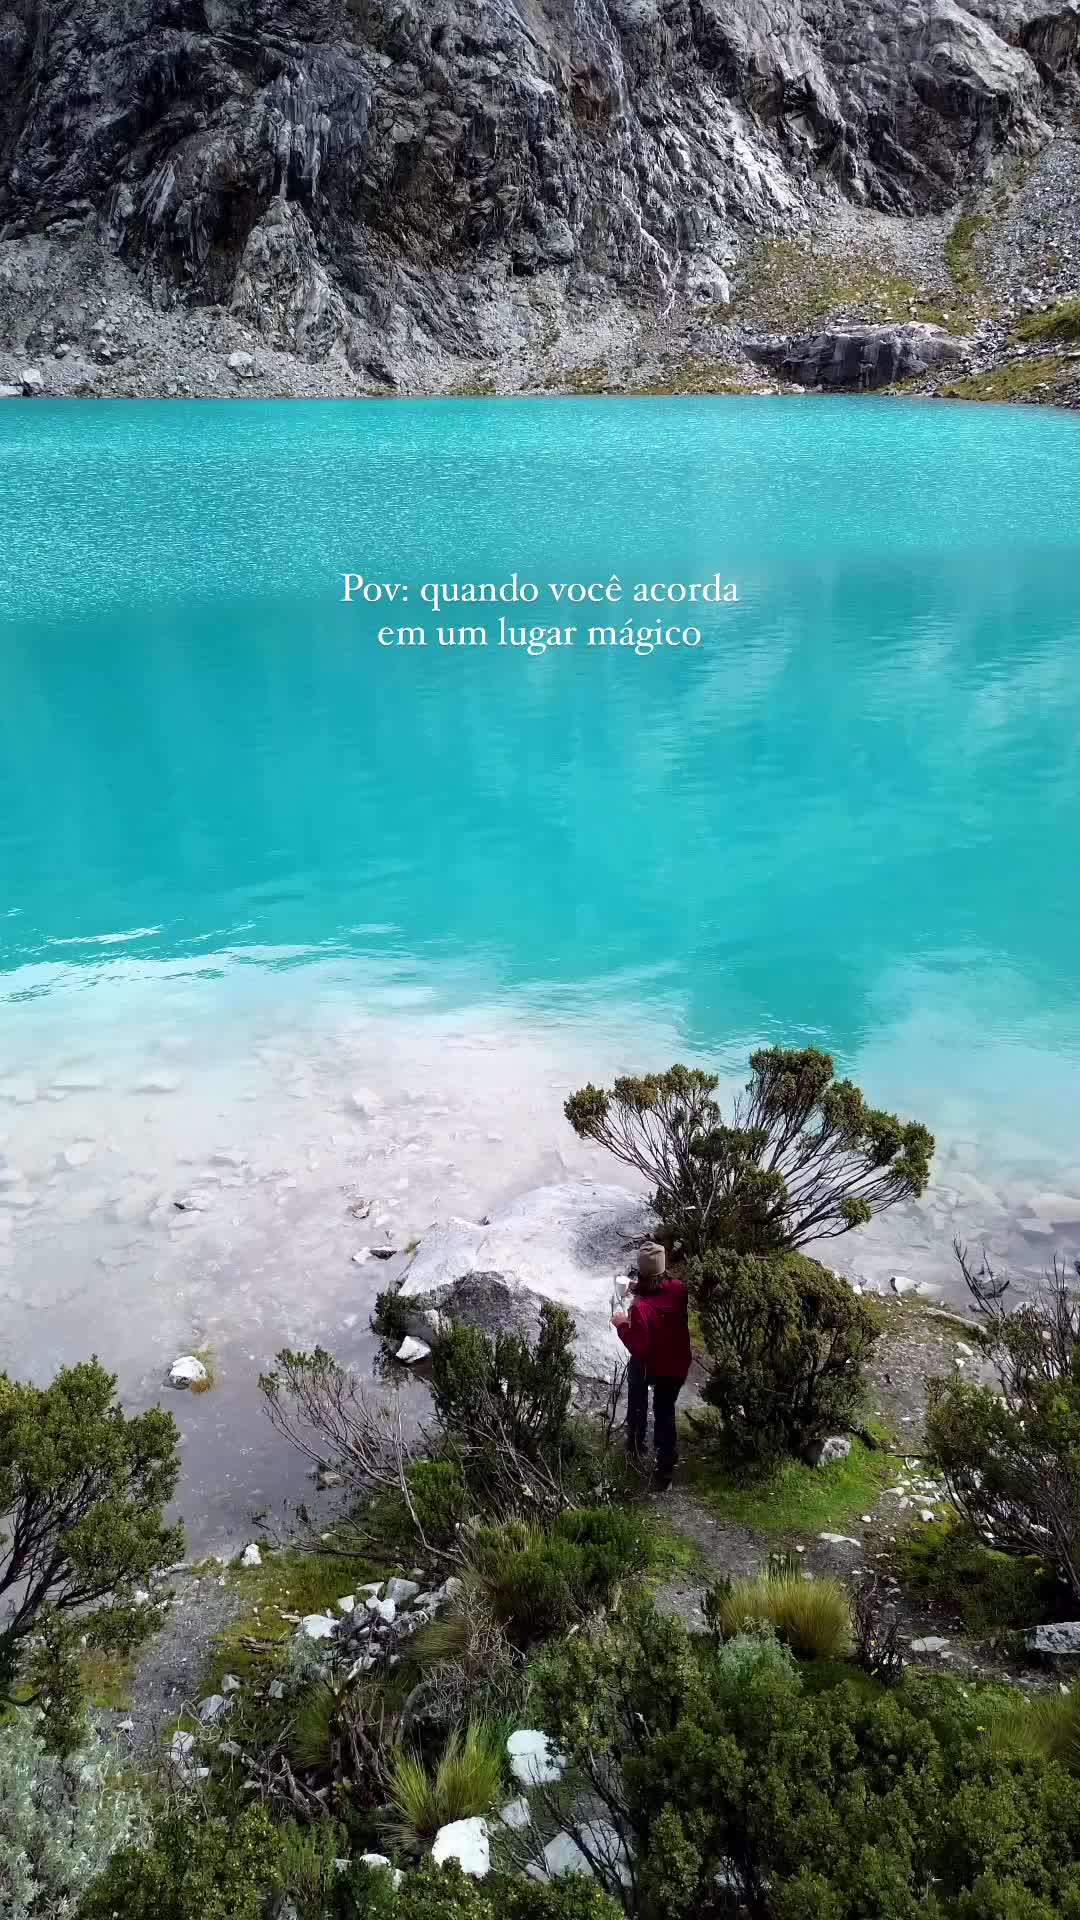 Discover the Majestic Laguna 69 in Huaraz, Peru